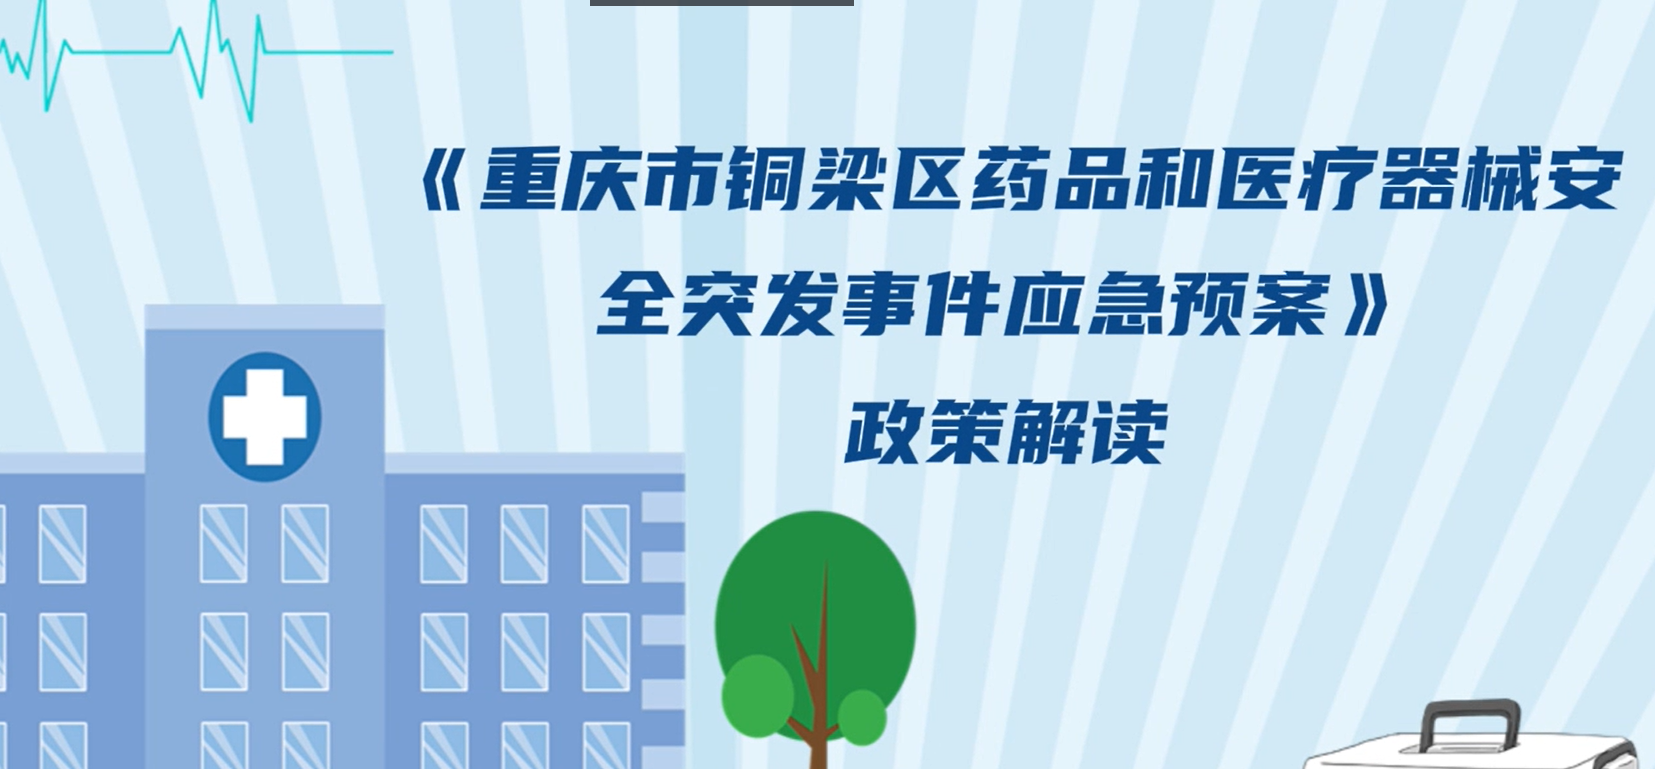 【视频解读】《重庆市铜梁区药品和医疗器械安全突发事件应急预案》